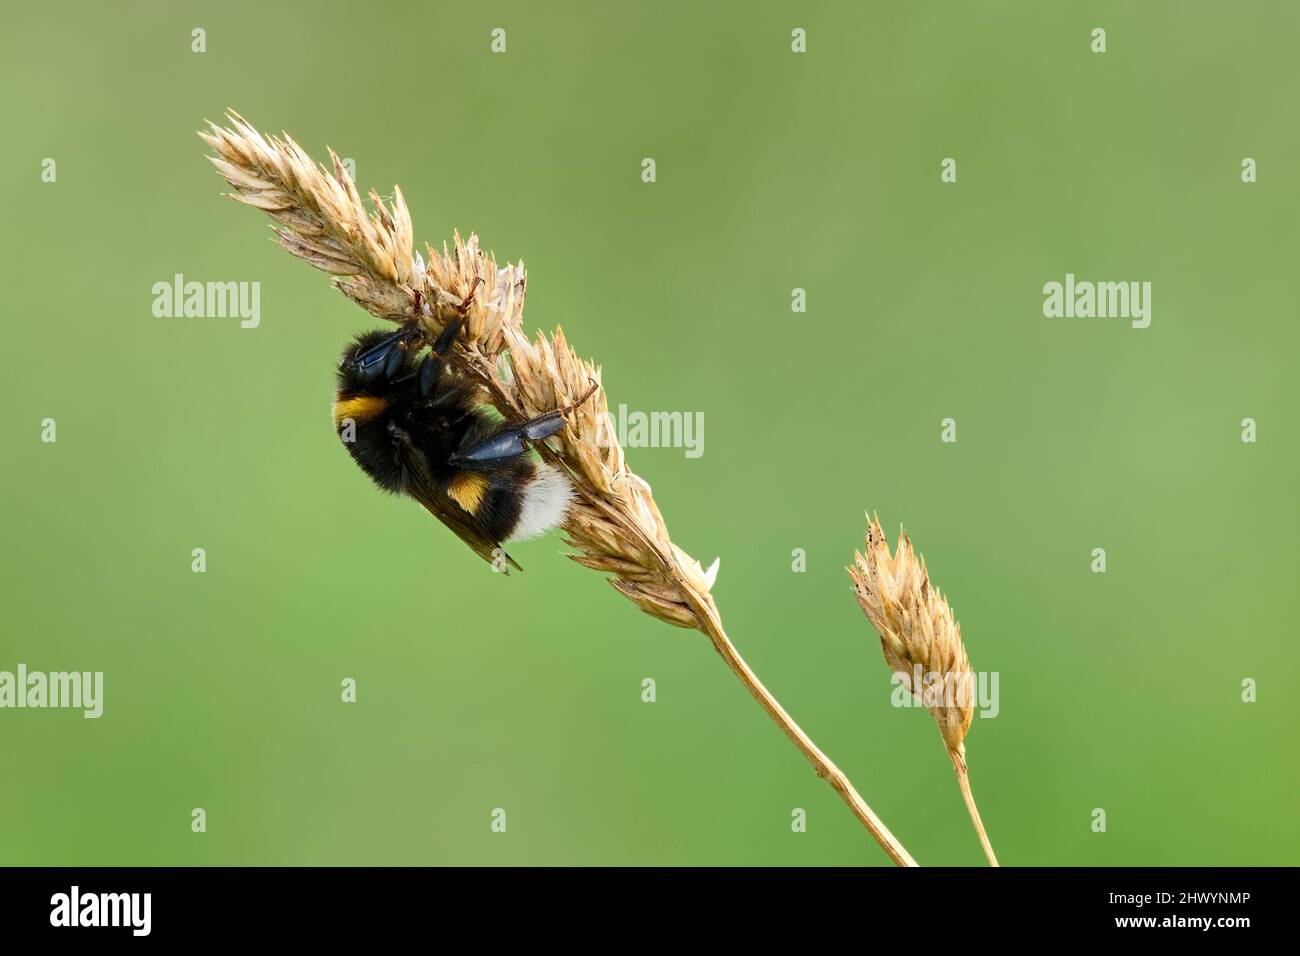 Hummel mit kleinem Käfer, Nahaufnahme. In der Dämmerung auf Gras auf der Wiese sitzen. Gattung Bombus pratorum. Unscharfer grüner natürlicher Hintergrund, Kopierbereich. Stockfoto